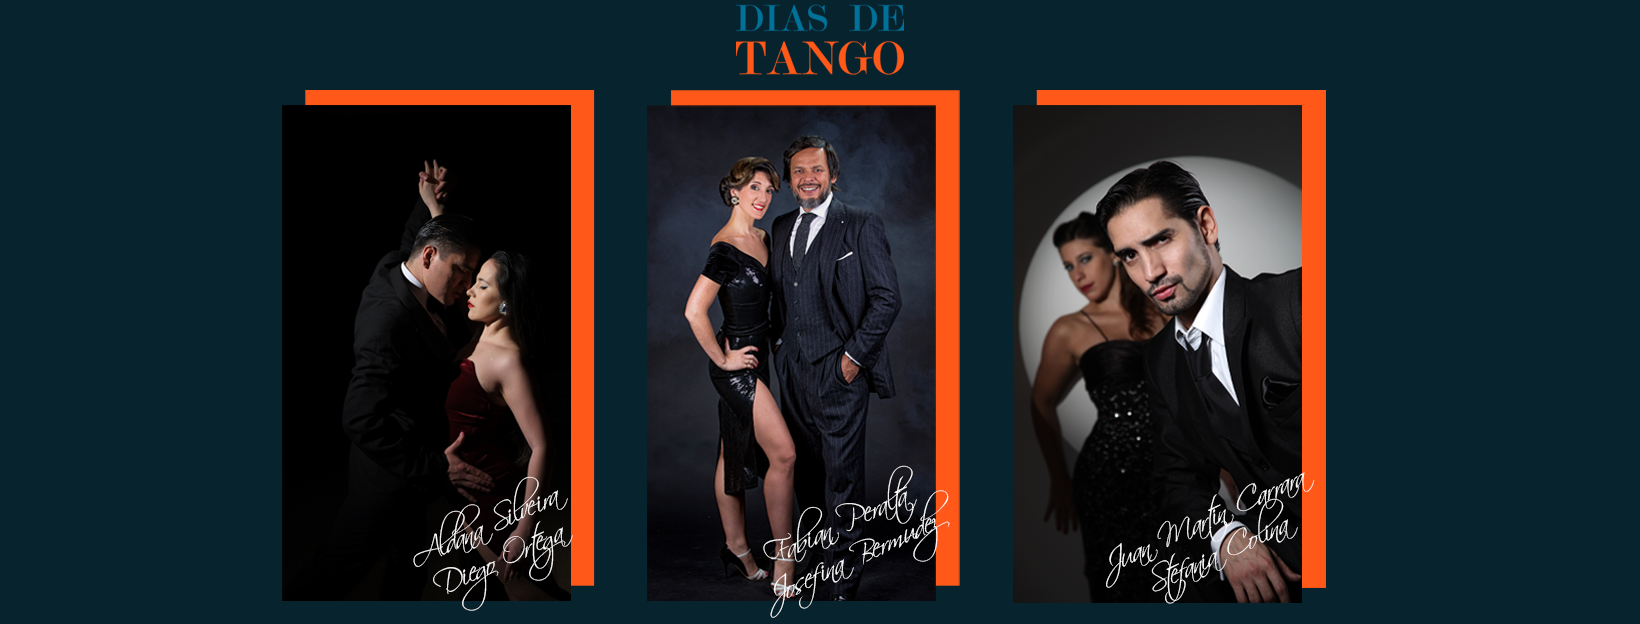 Grafika promująca wydarzenie: Dias De Tango/ Festiwal Międzynarodowe Dni Tanga w Łodzi , fot. mat. Dias De Tango